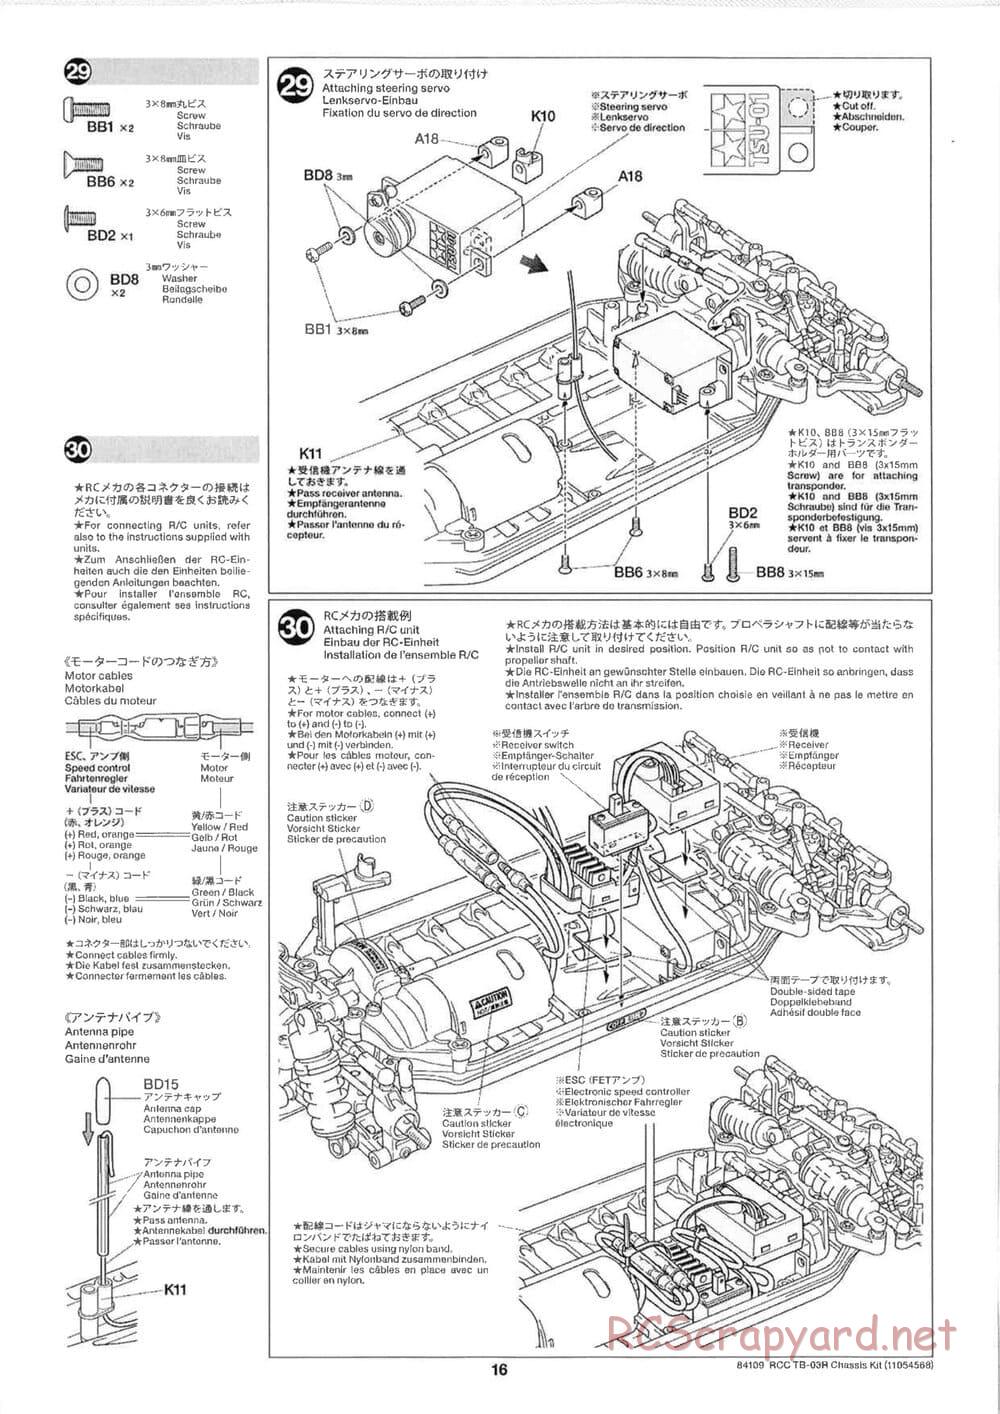 Tamiya - TB-03R Chassis - Manual - Page 16